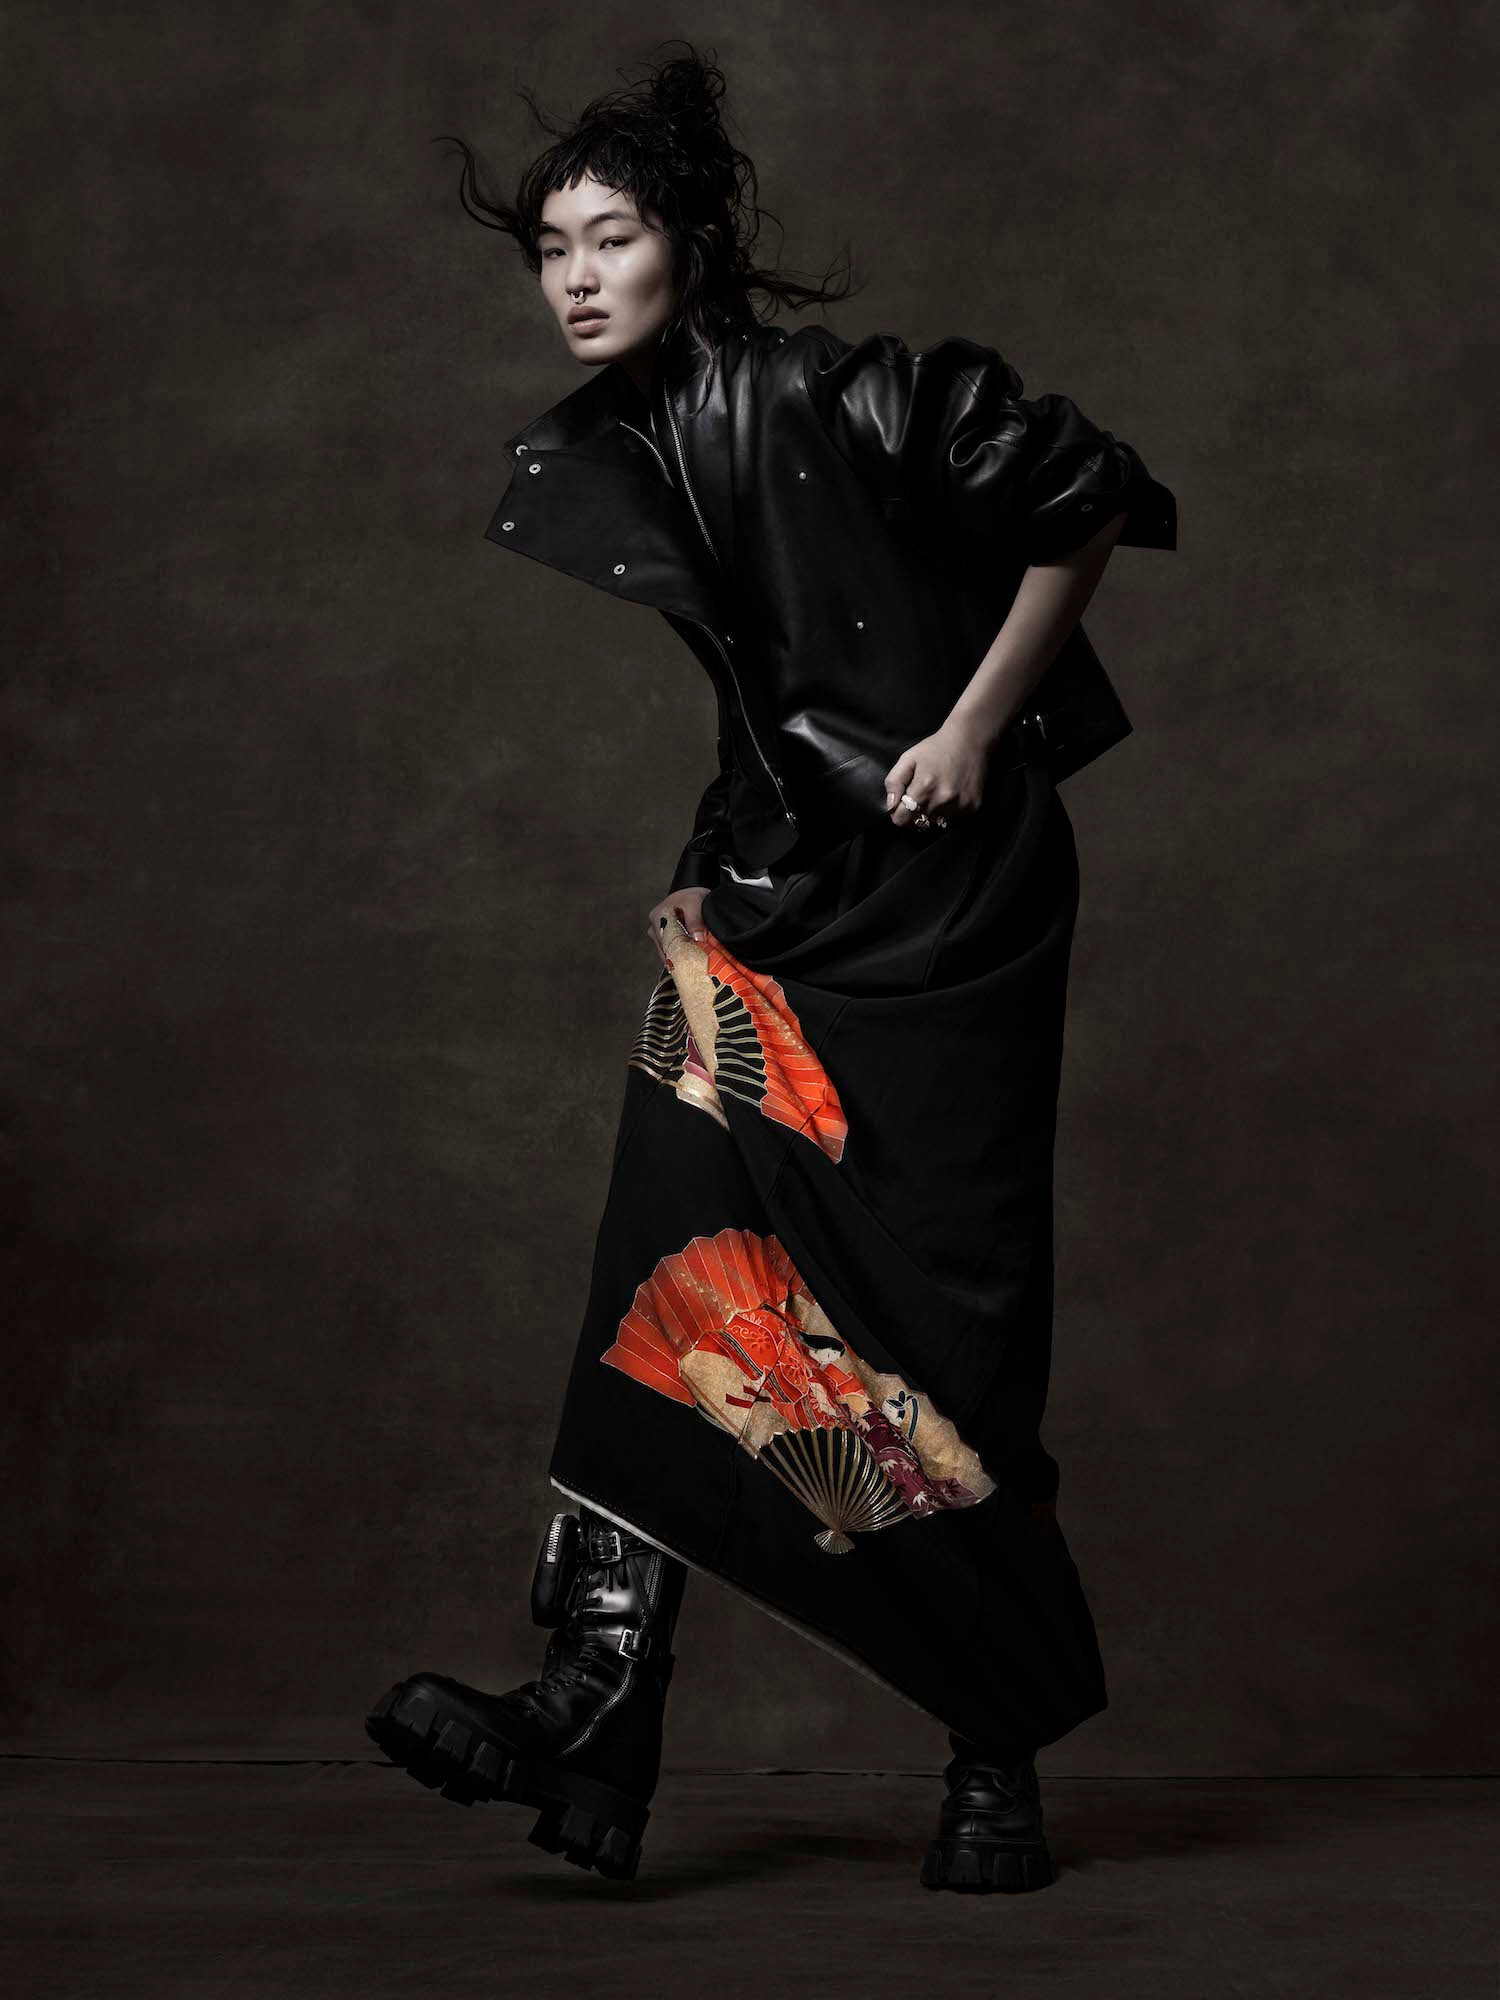 Тихару Окунги, Vogue Japan, Нью-Йорк, 2019 год. Фотограф Альберт Уотсон